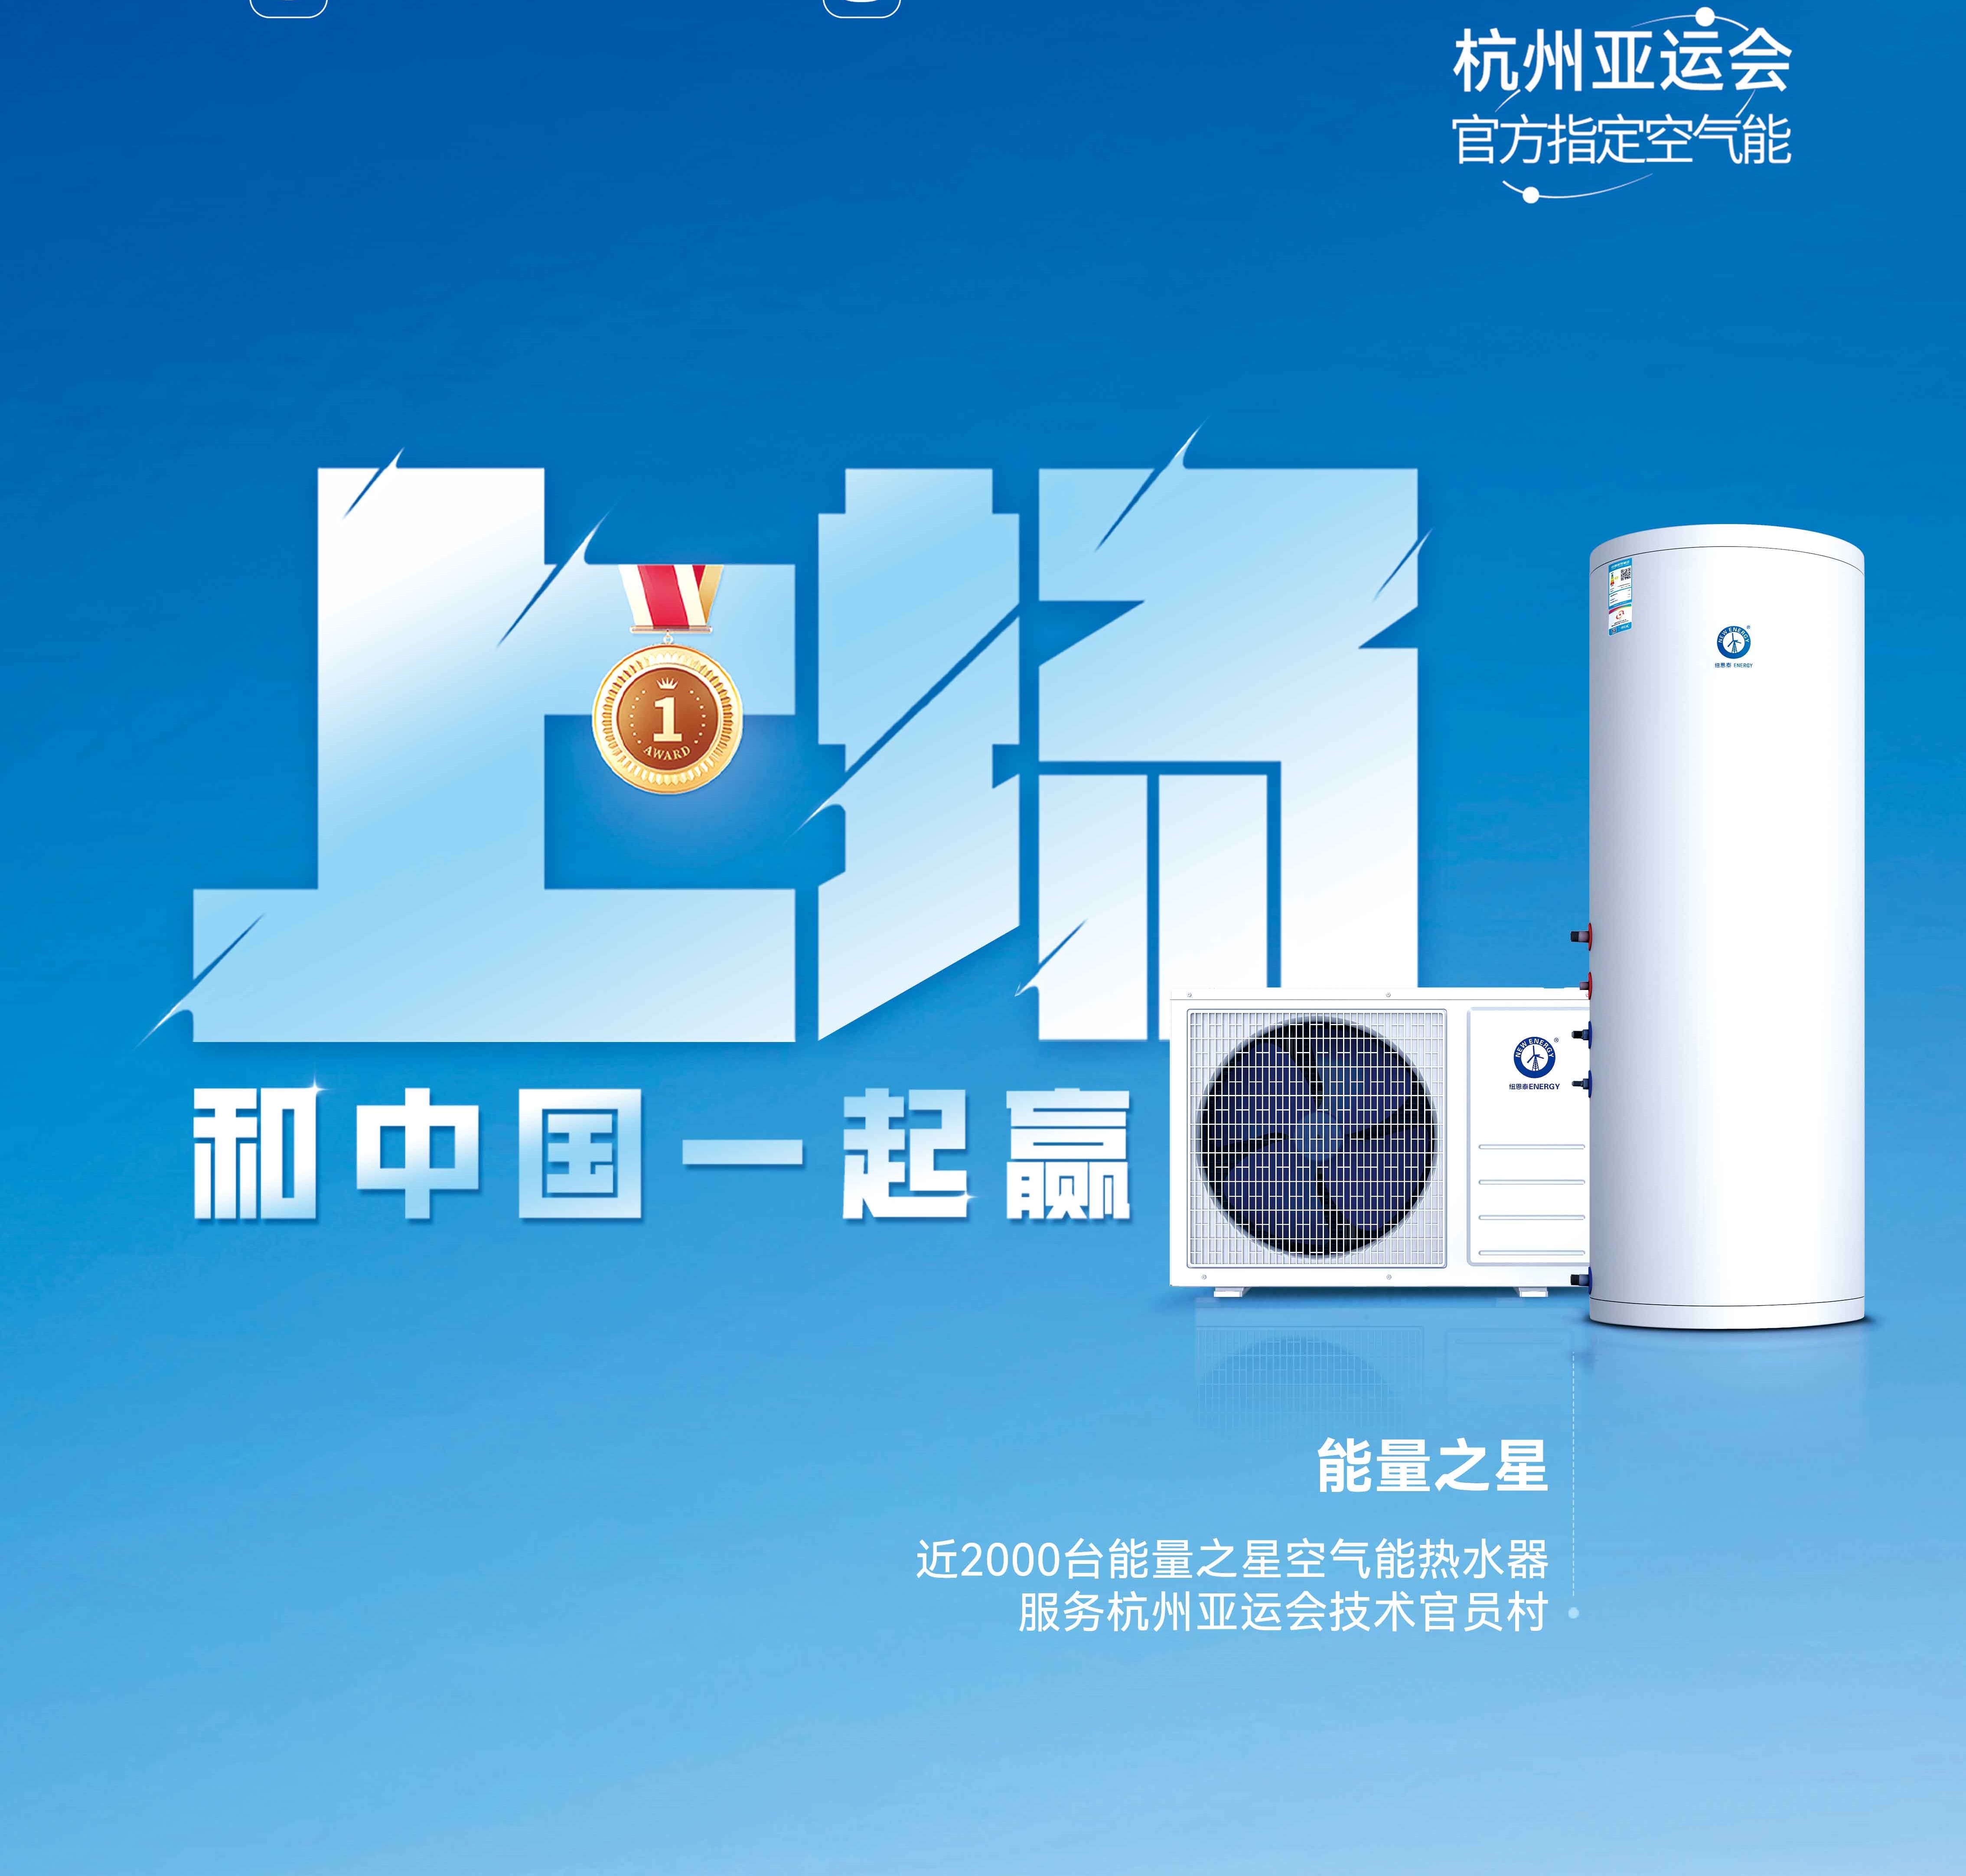 【欧洲杯球赛在哪里买空气能热水器】杭州亚运会亚运技术官员村的热水器用的是哪个供应商的产品？